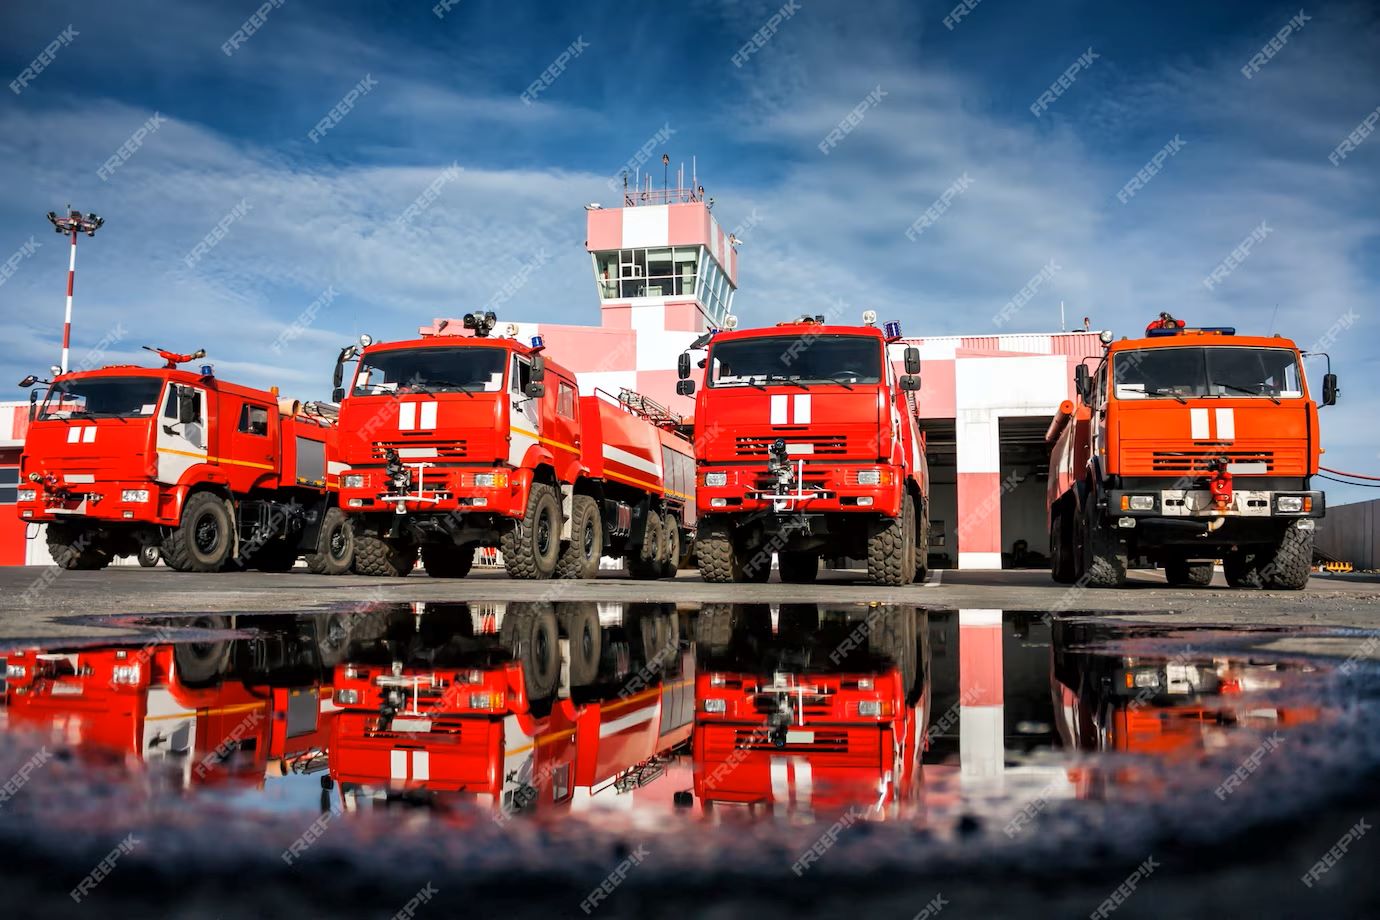 camions-pompiers-aerodrome-reflet-dans-flaque-eau-pres-boites-garage_527900-582.jpg